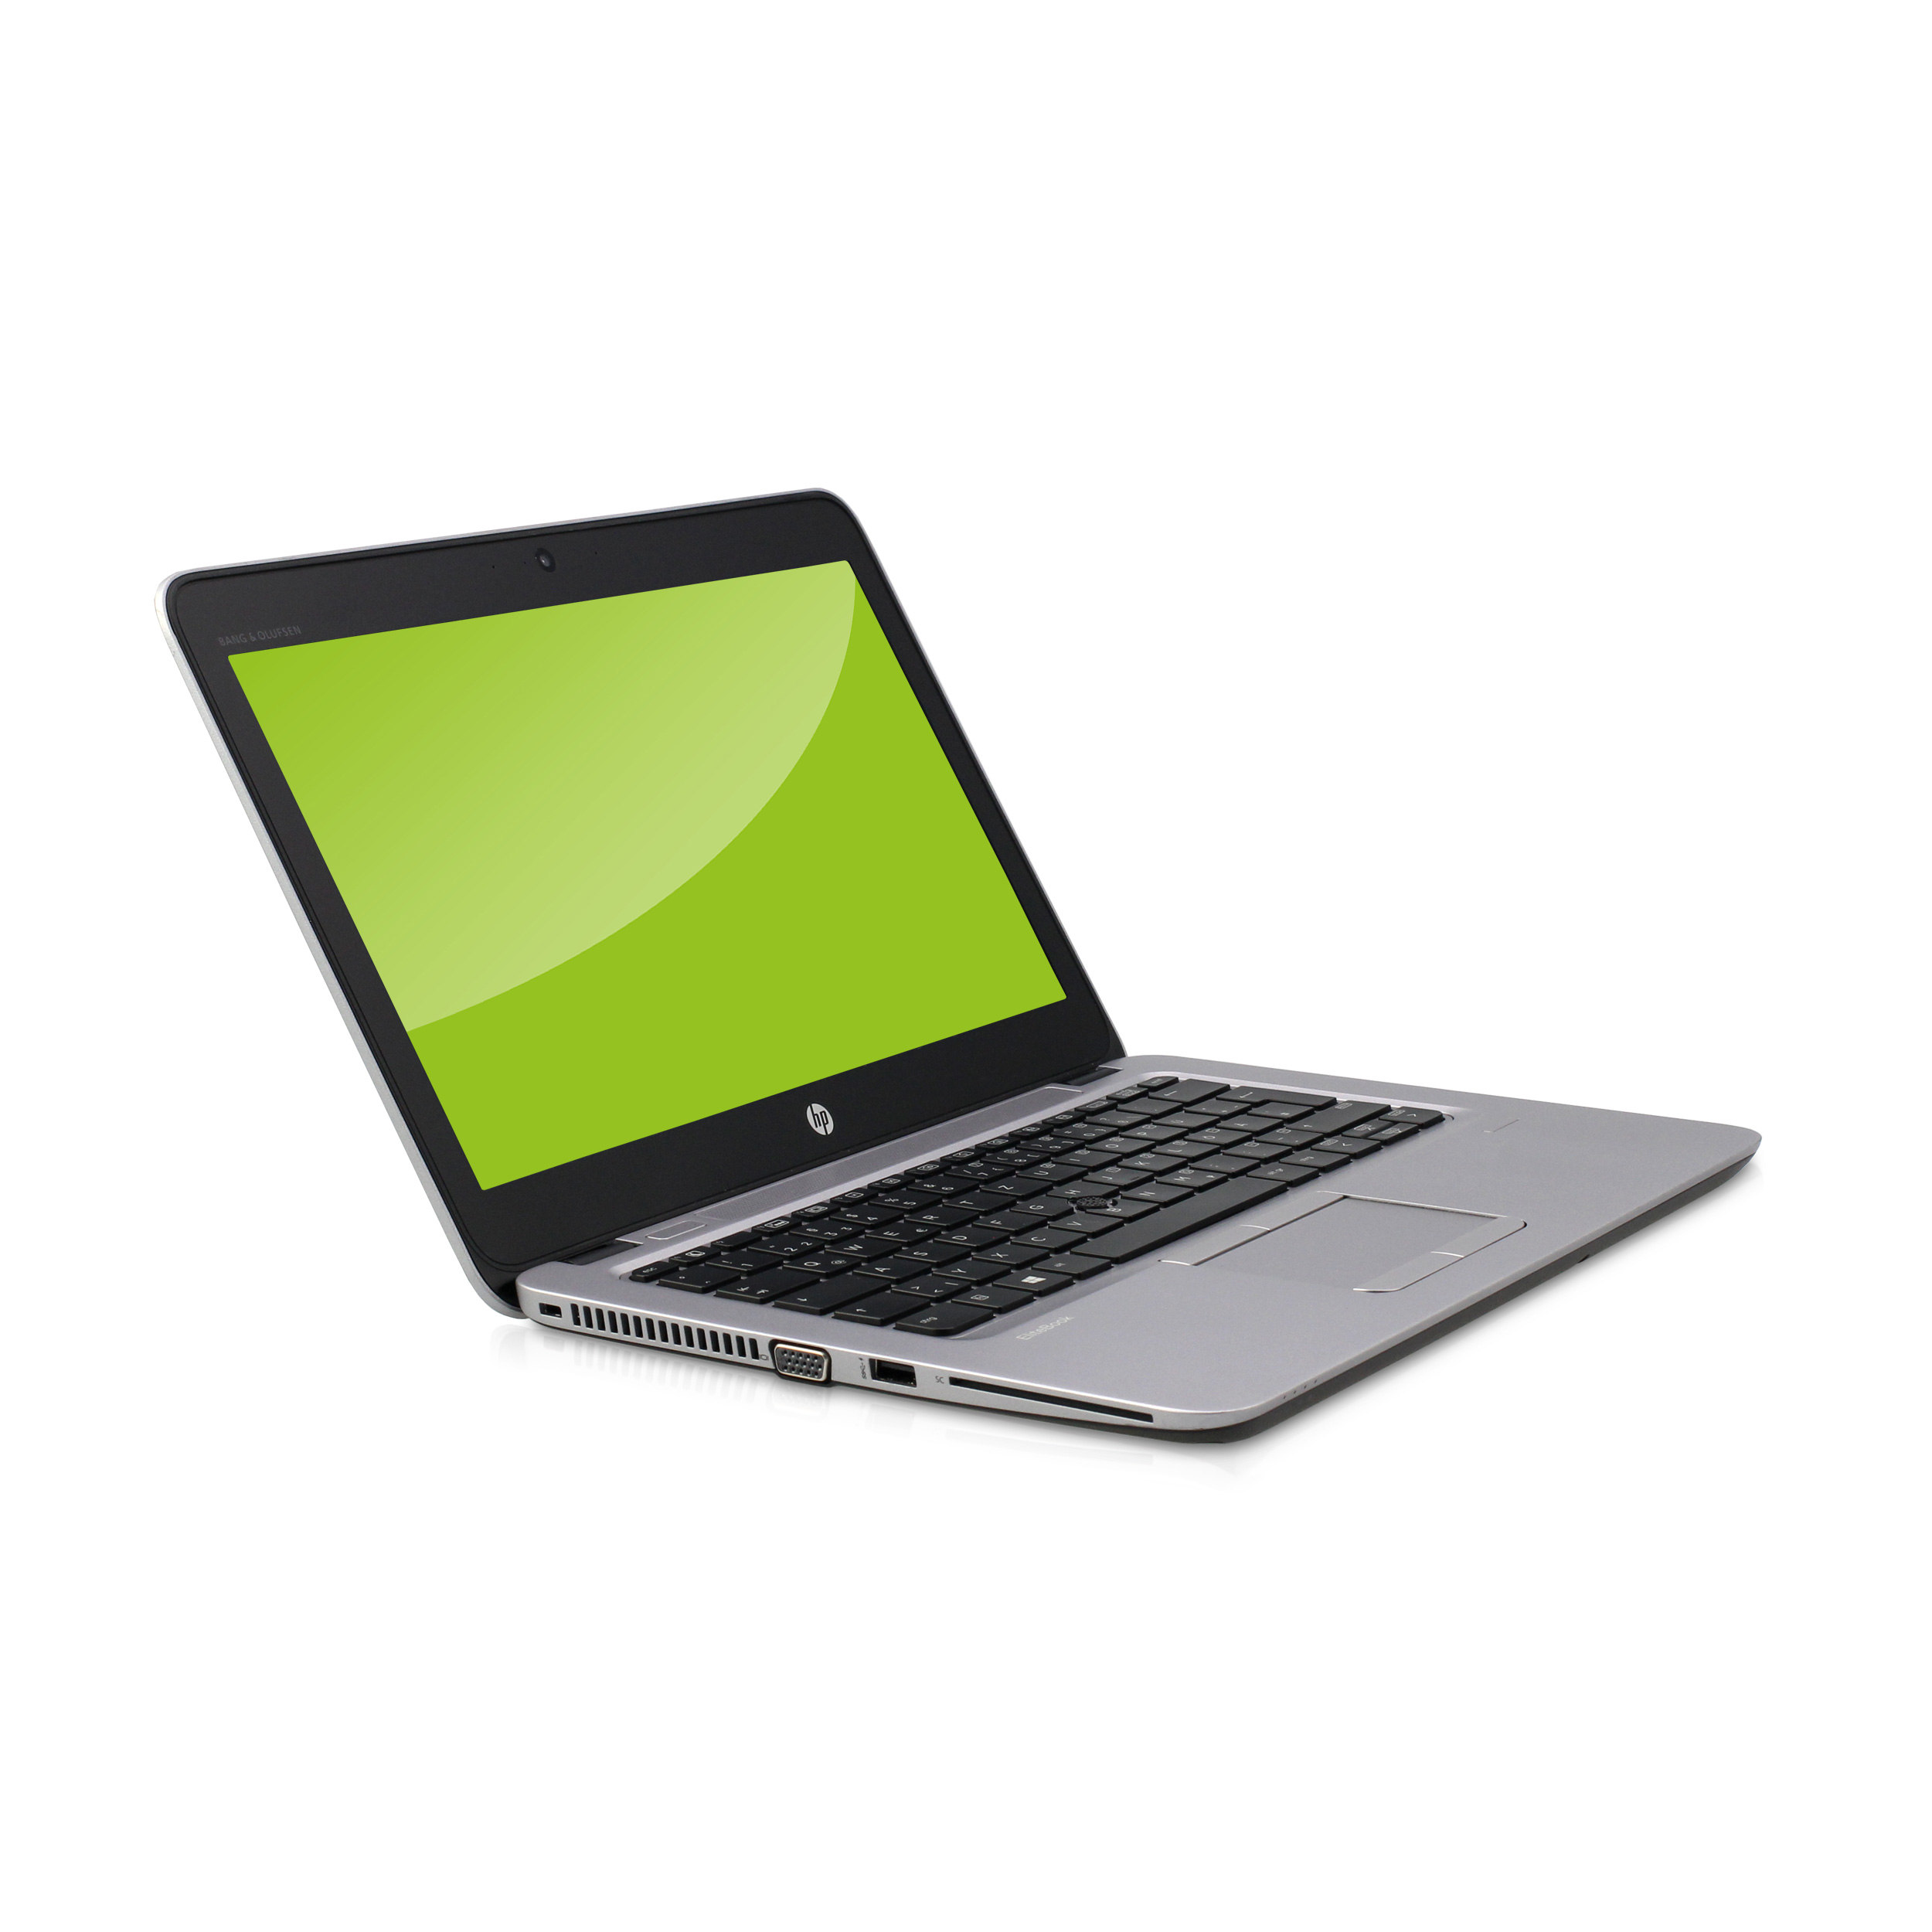 HP EliteBook 820 G3 Intel Core i5-6200U 2,30GHz 8GB 256GB SSD Win 10 Pro